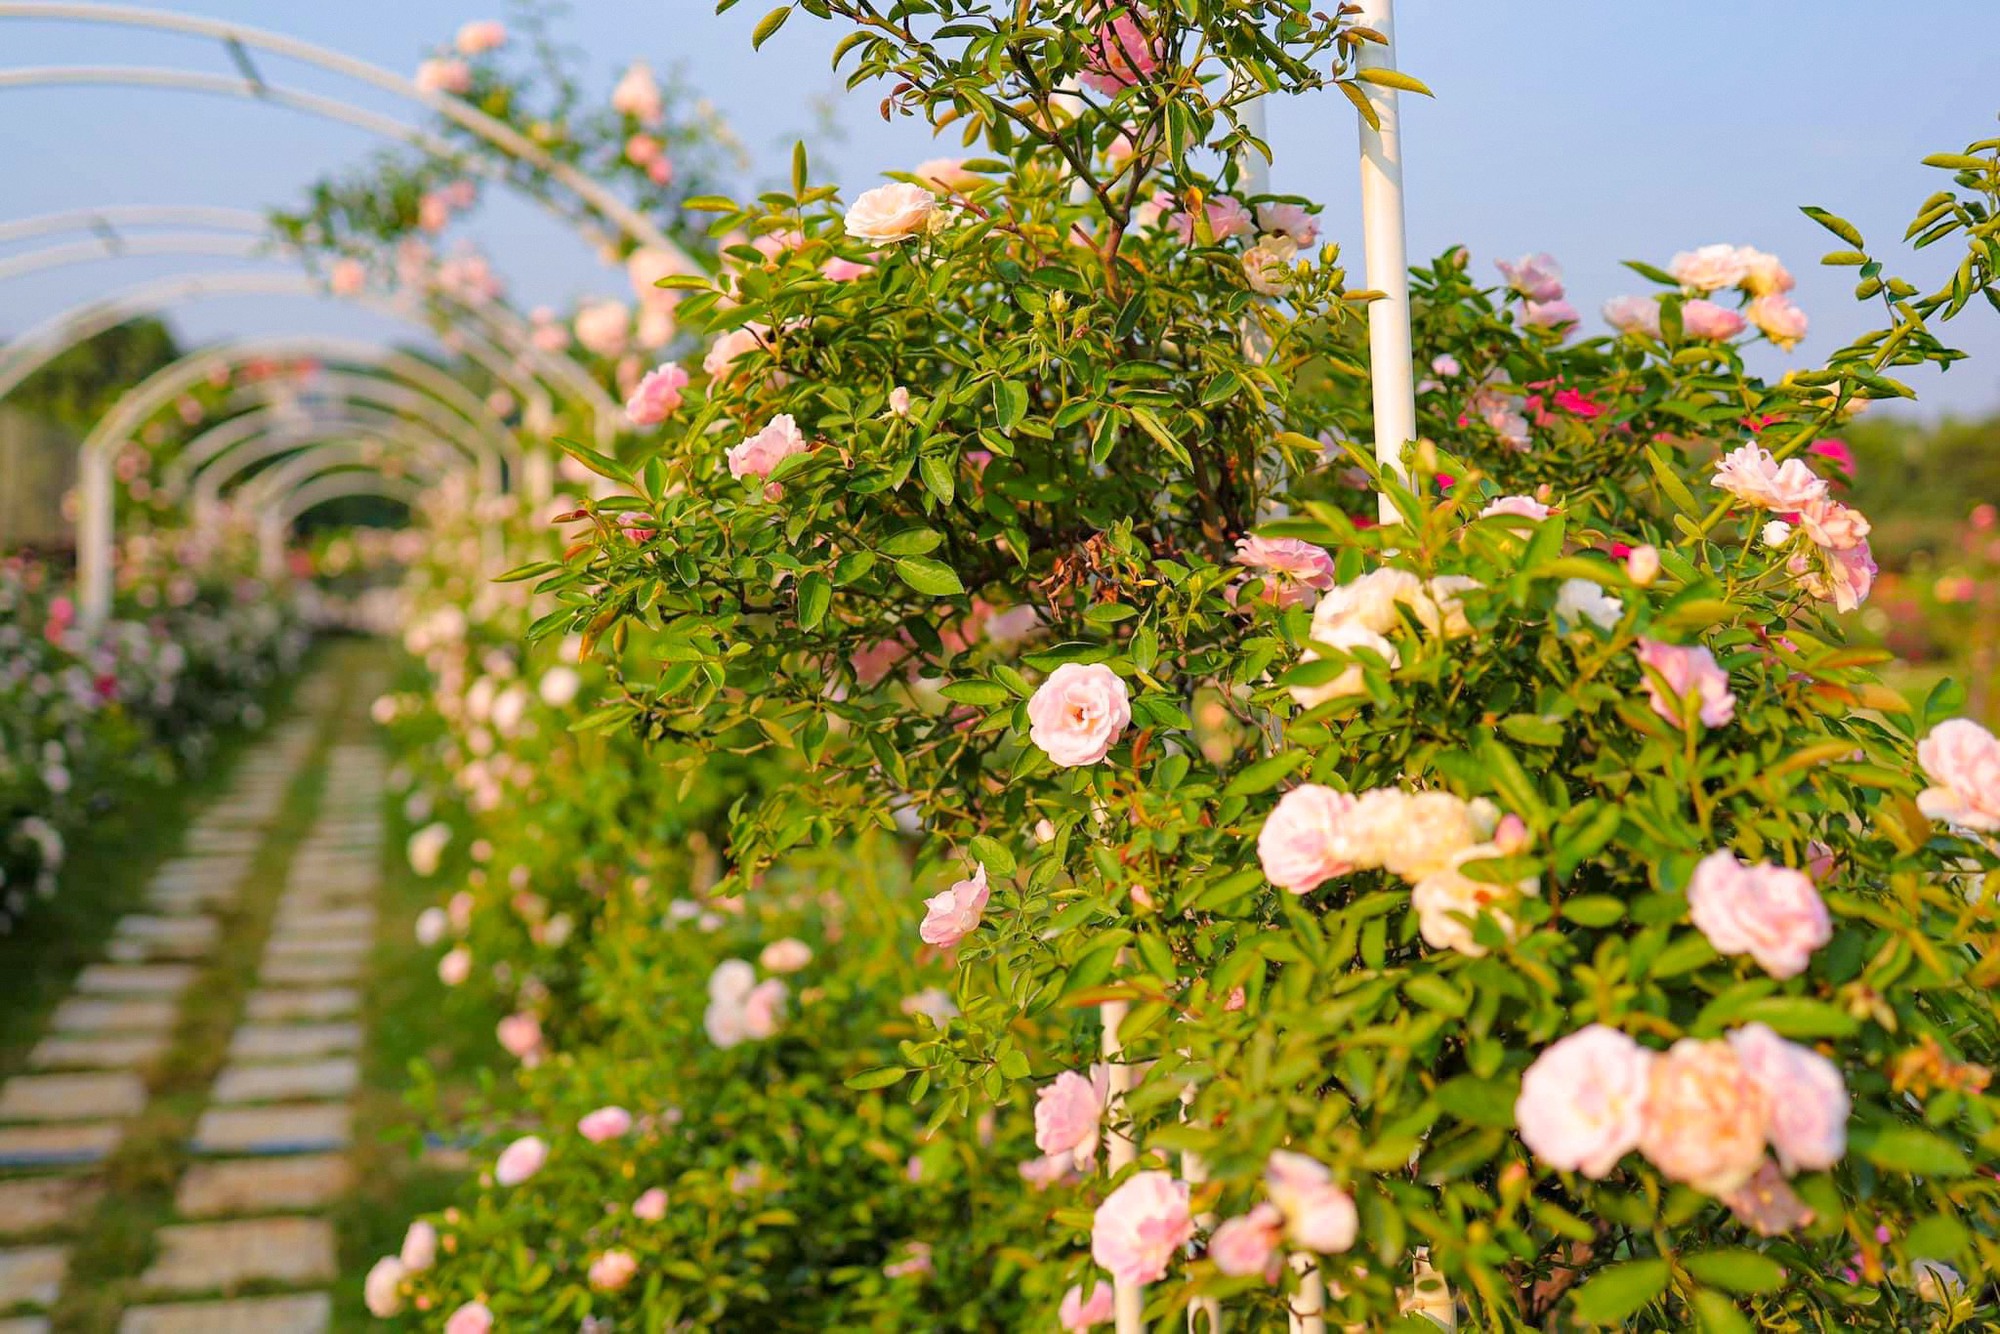 Hình nền Nền Khu Vườn Xinh đẹp Với Nhiều Loại Hoa Hồng Nền Hoa Hồng Sân  Vườn Hoa Background Vector để tải xuống miễn phí  Pngtree